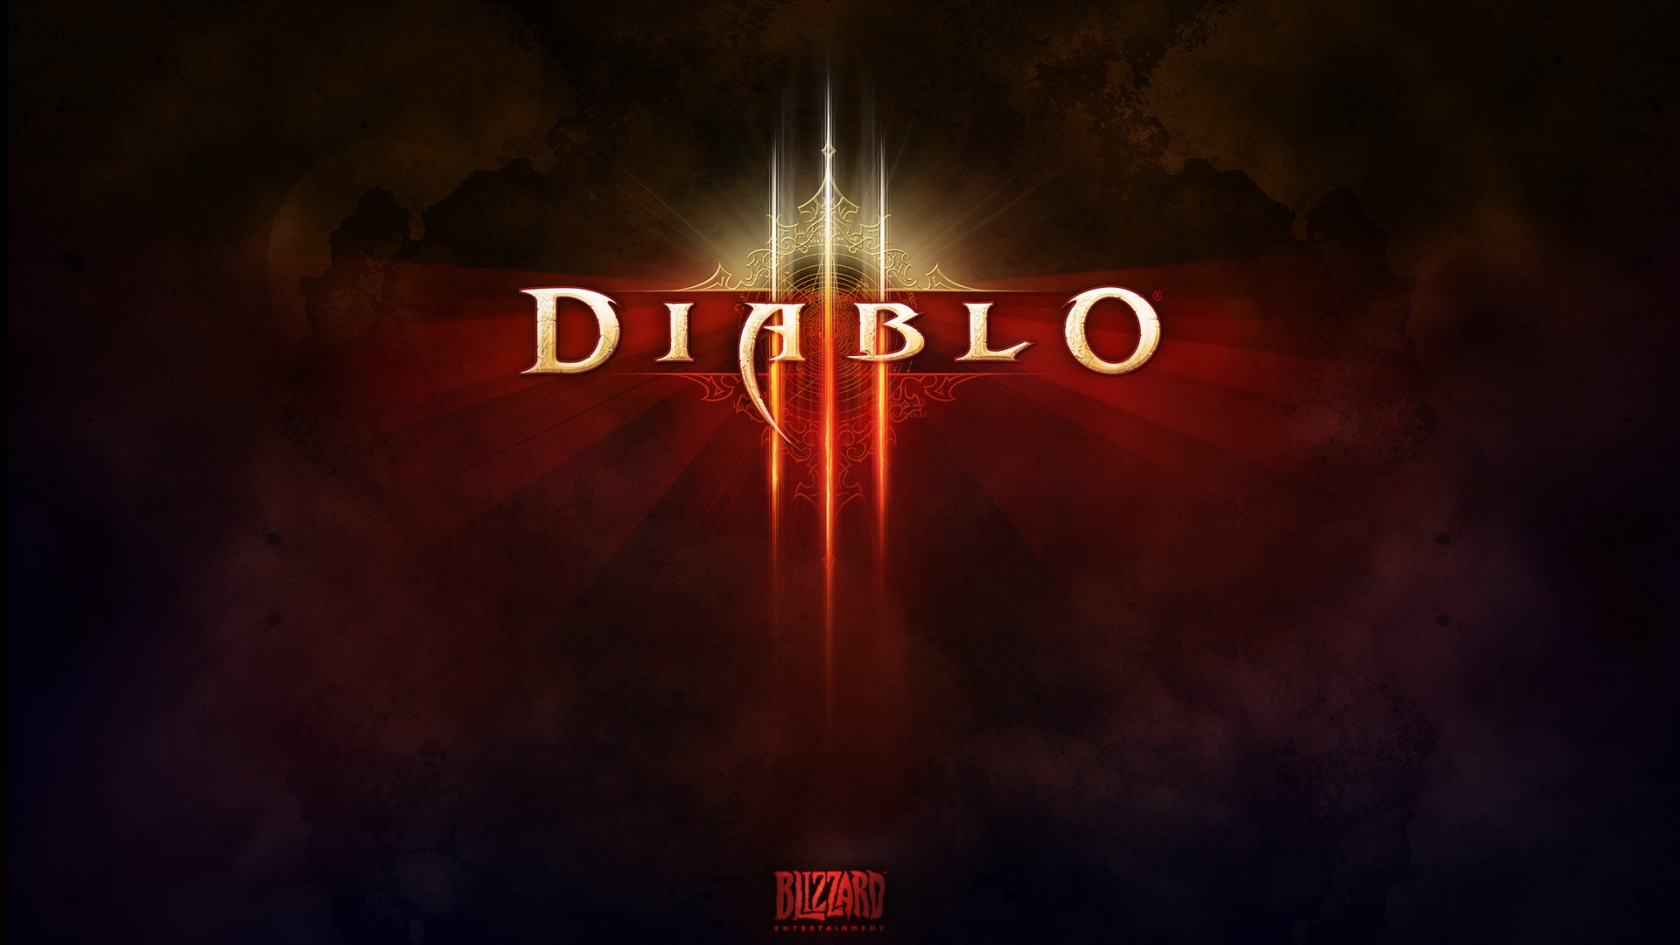 Diablo 3 Game Logo for 1680 x 945 HDTV resolution